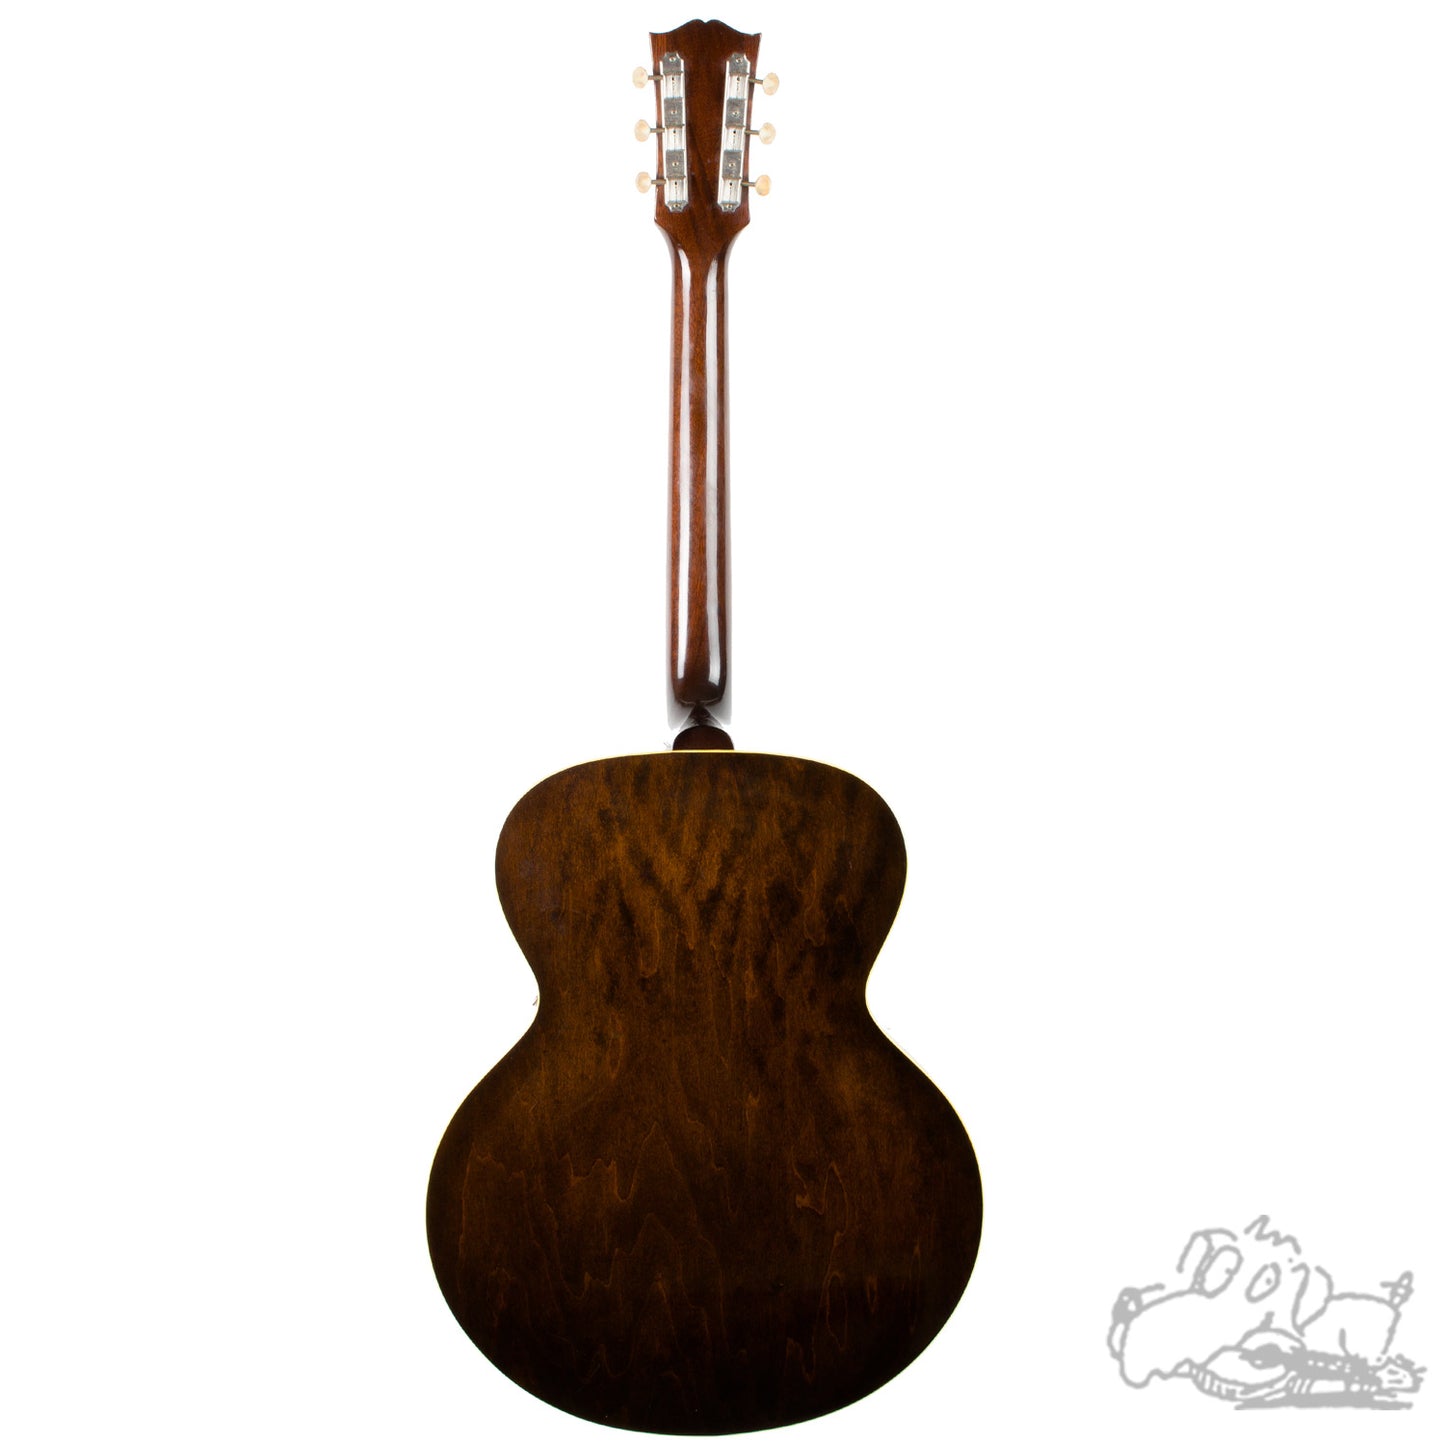 1957 Gibson ES-125